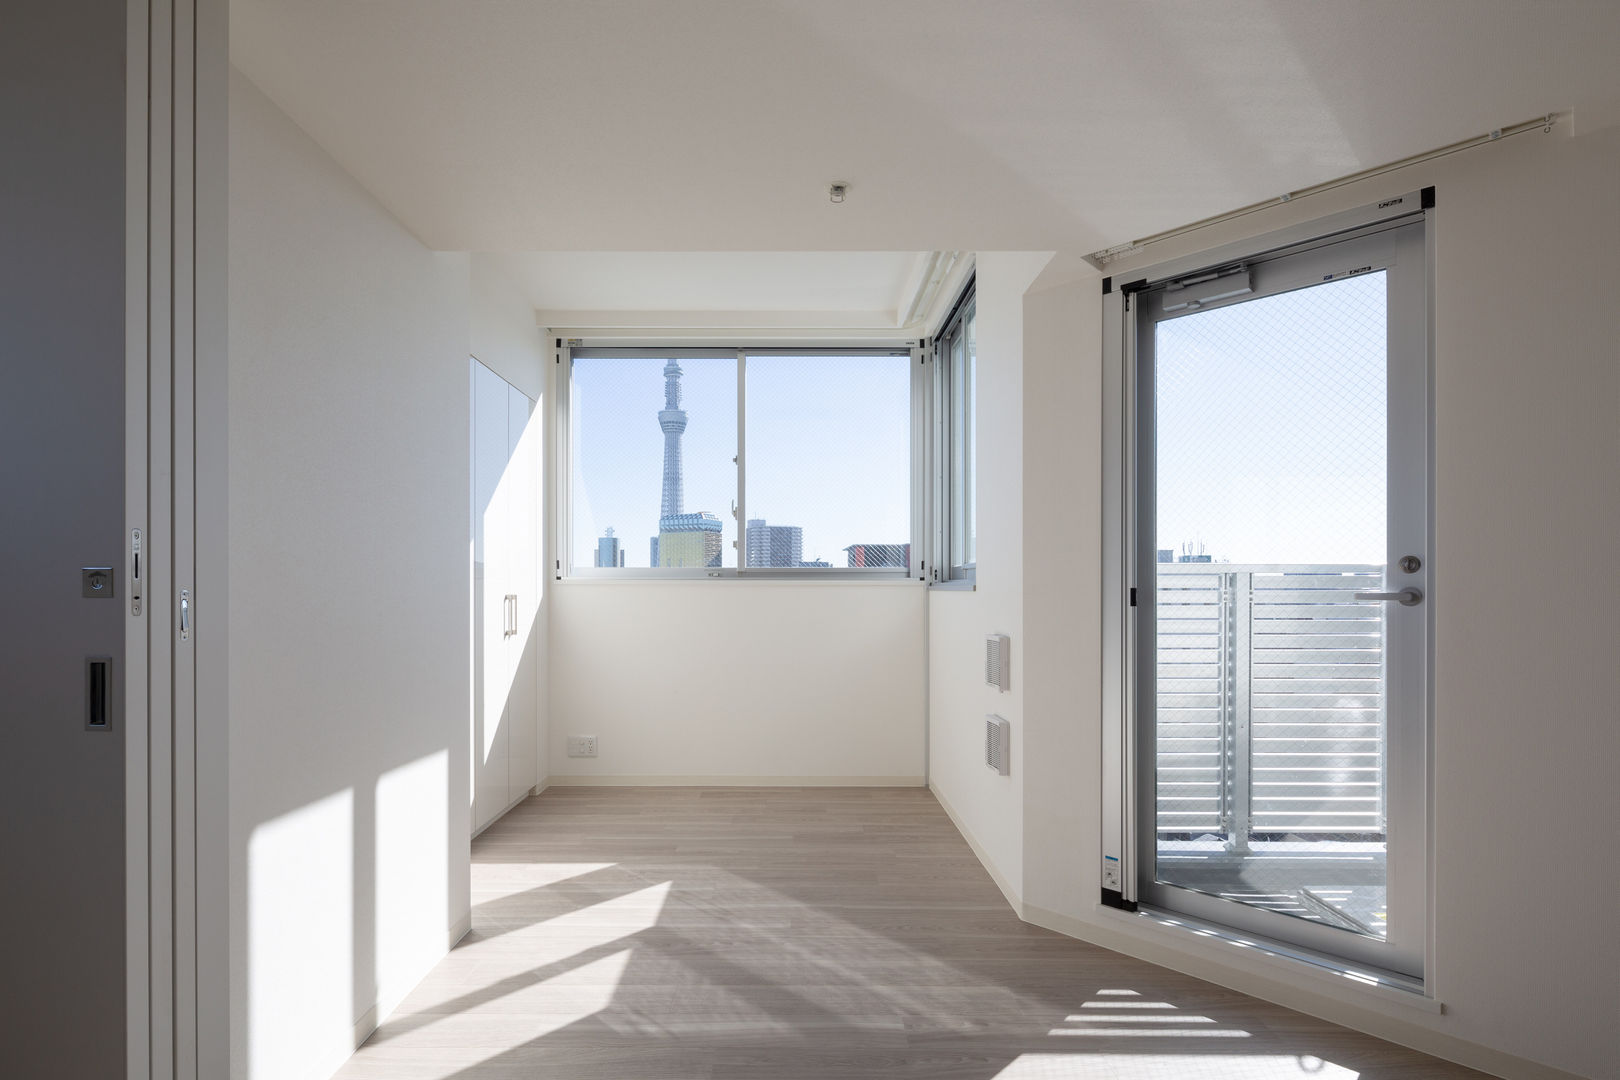 スカイツリーを望む浅草雷門の住まい, JWA，Jun Watanabe & Associates JWA，Jun Watanabe & Associates Living room Wood-Plastic Composite